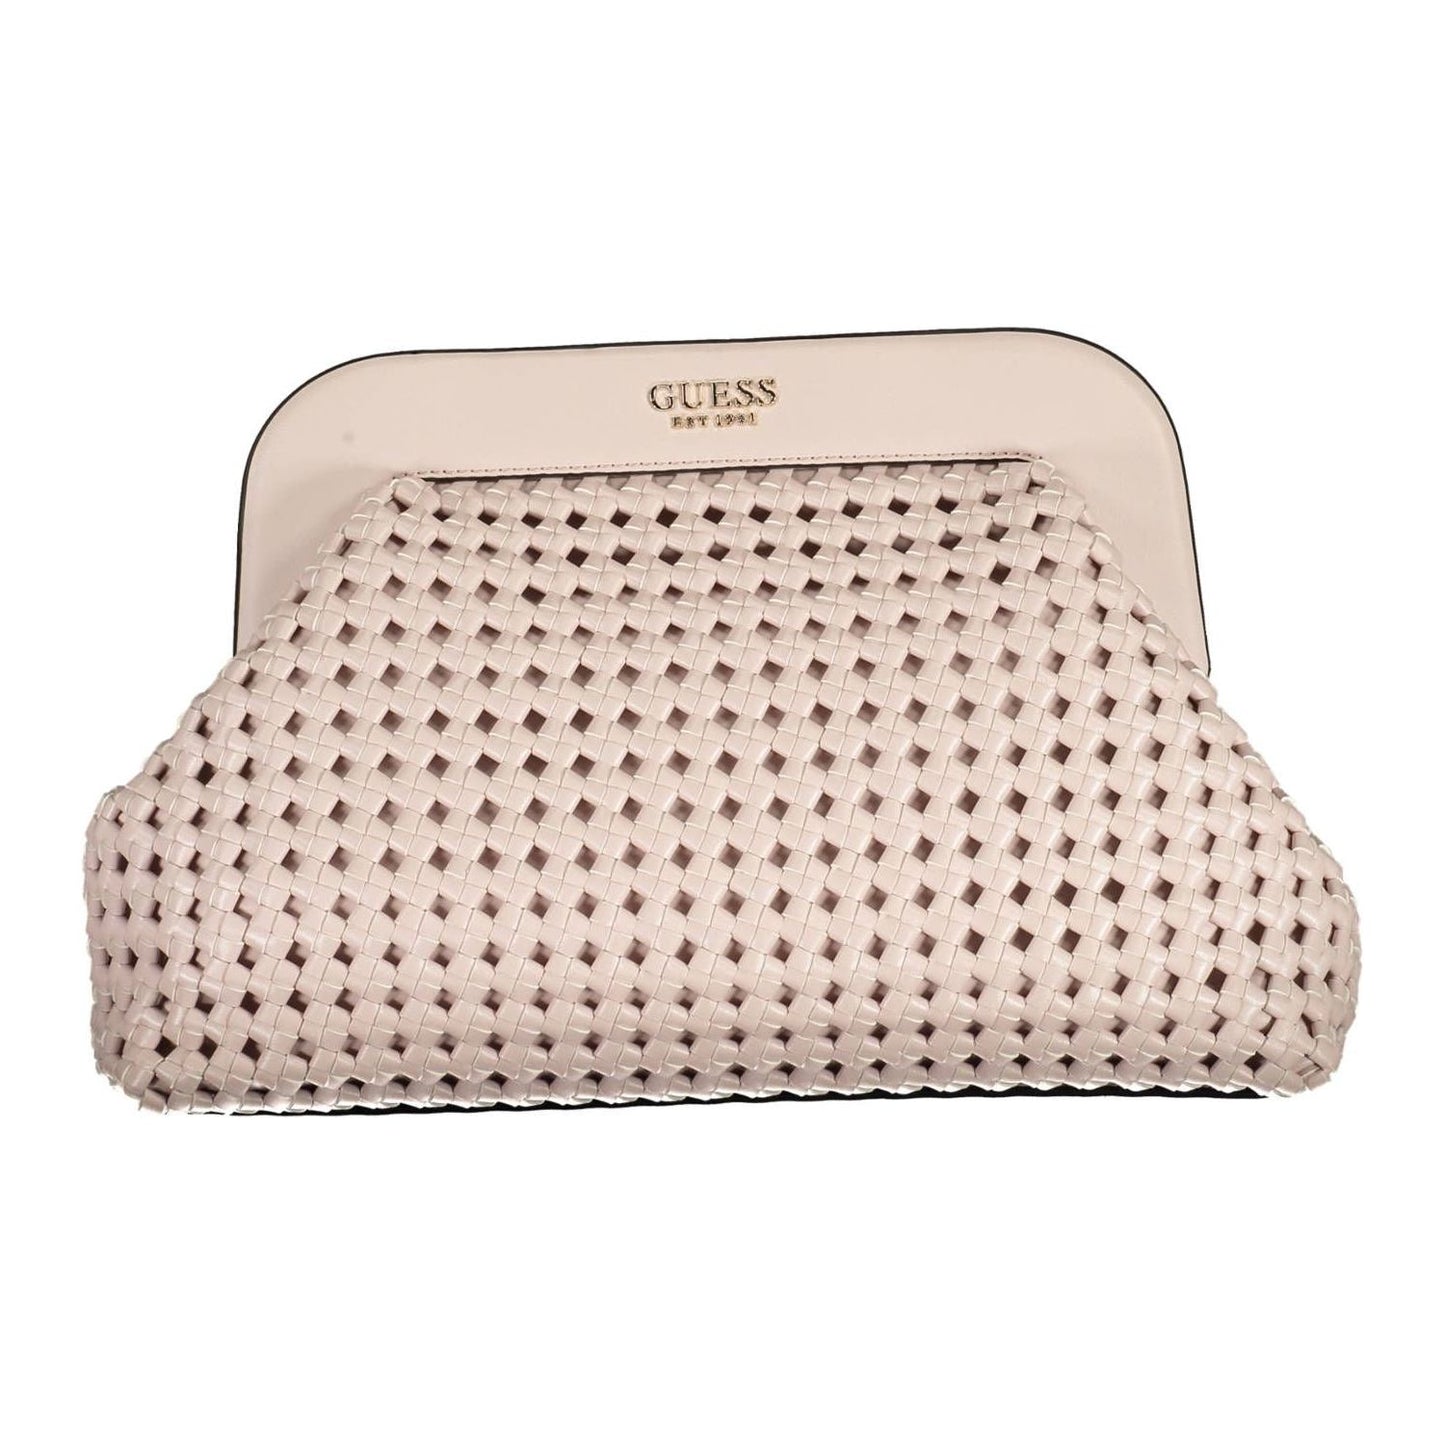 Elegant Pink Handbag with Contrasting Details